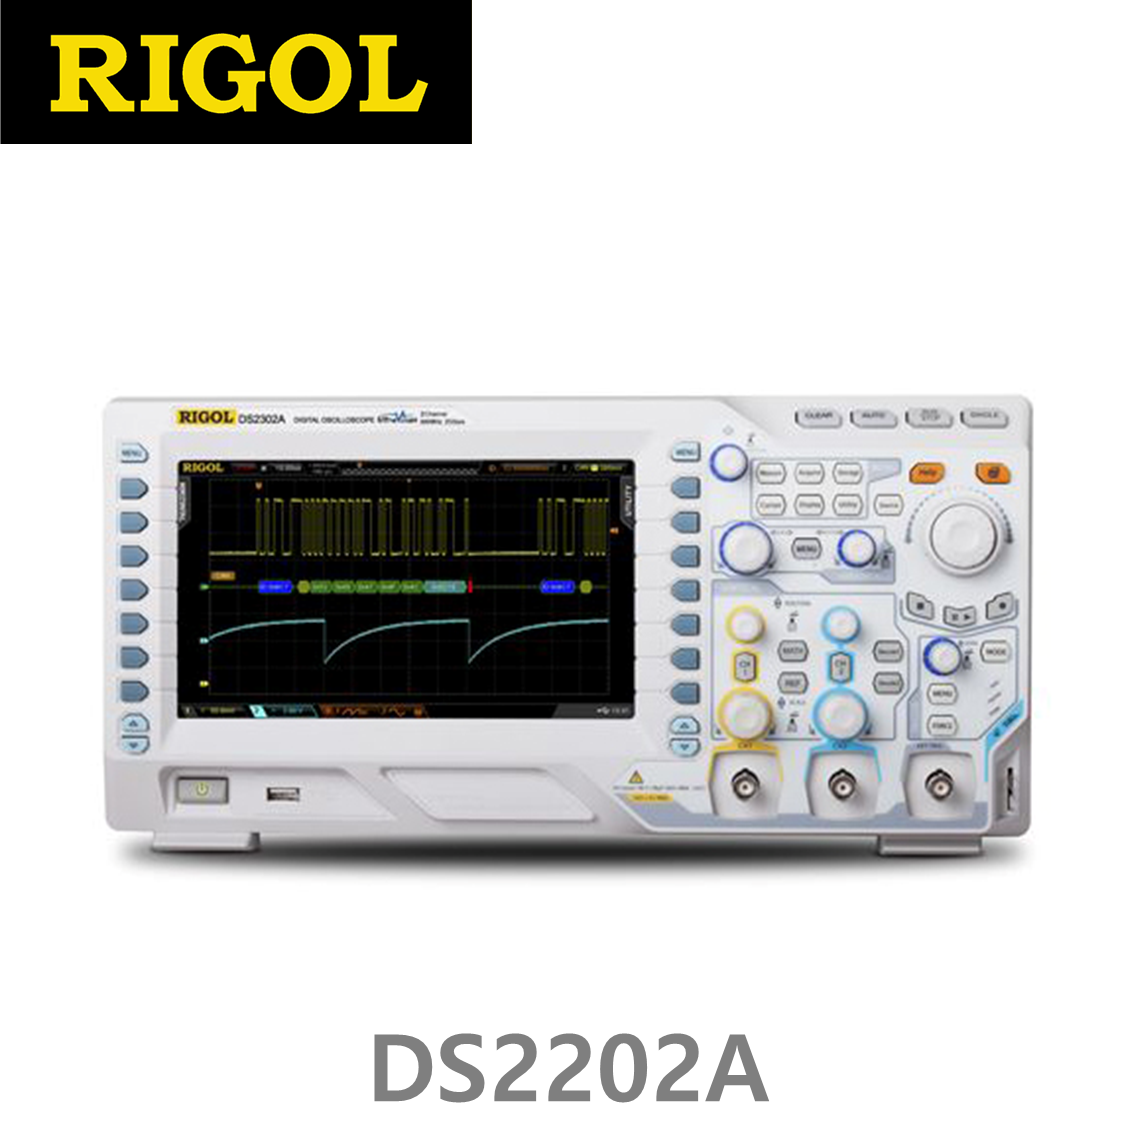 [RIGOL DS2202A] 200MHz/2CH, 2GSa/s, 디지털오실로스코프